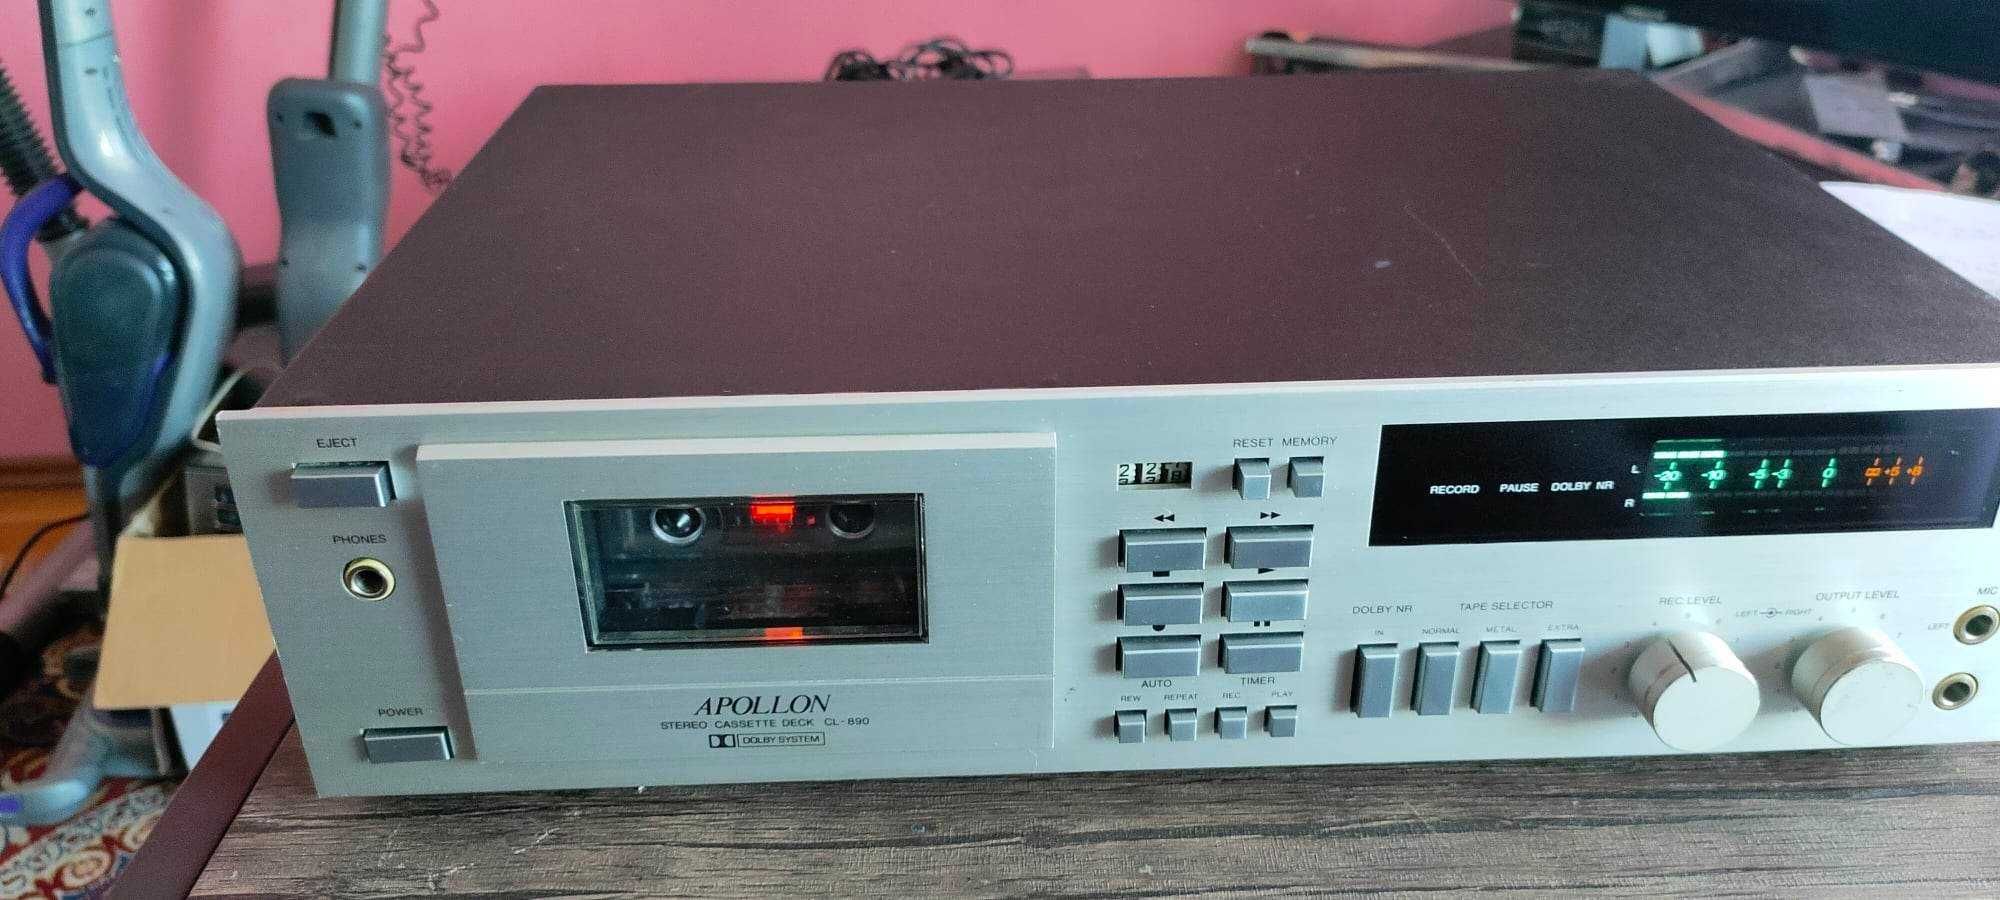 Apollon CL-890 Stereo Cassette Deck